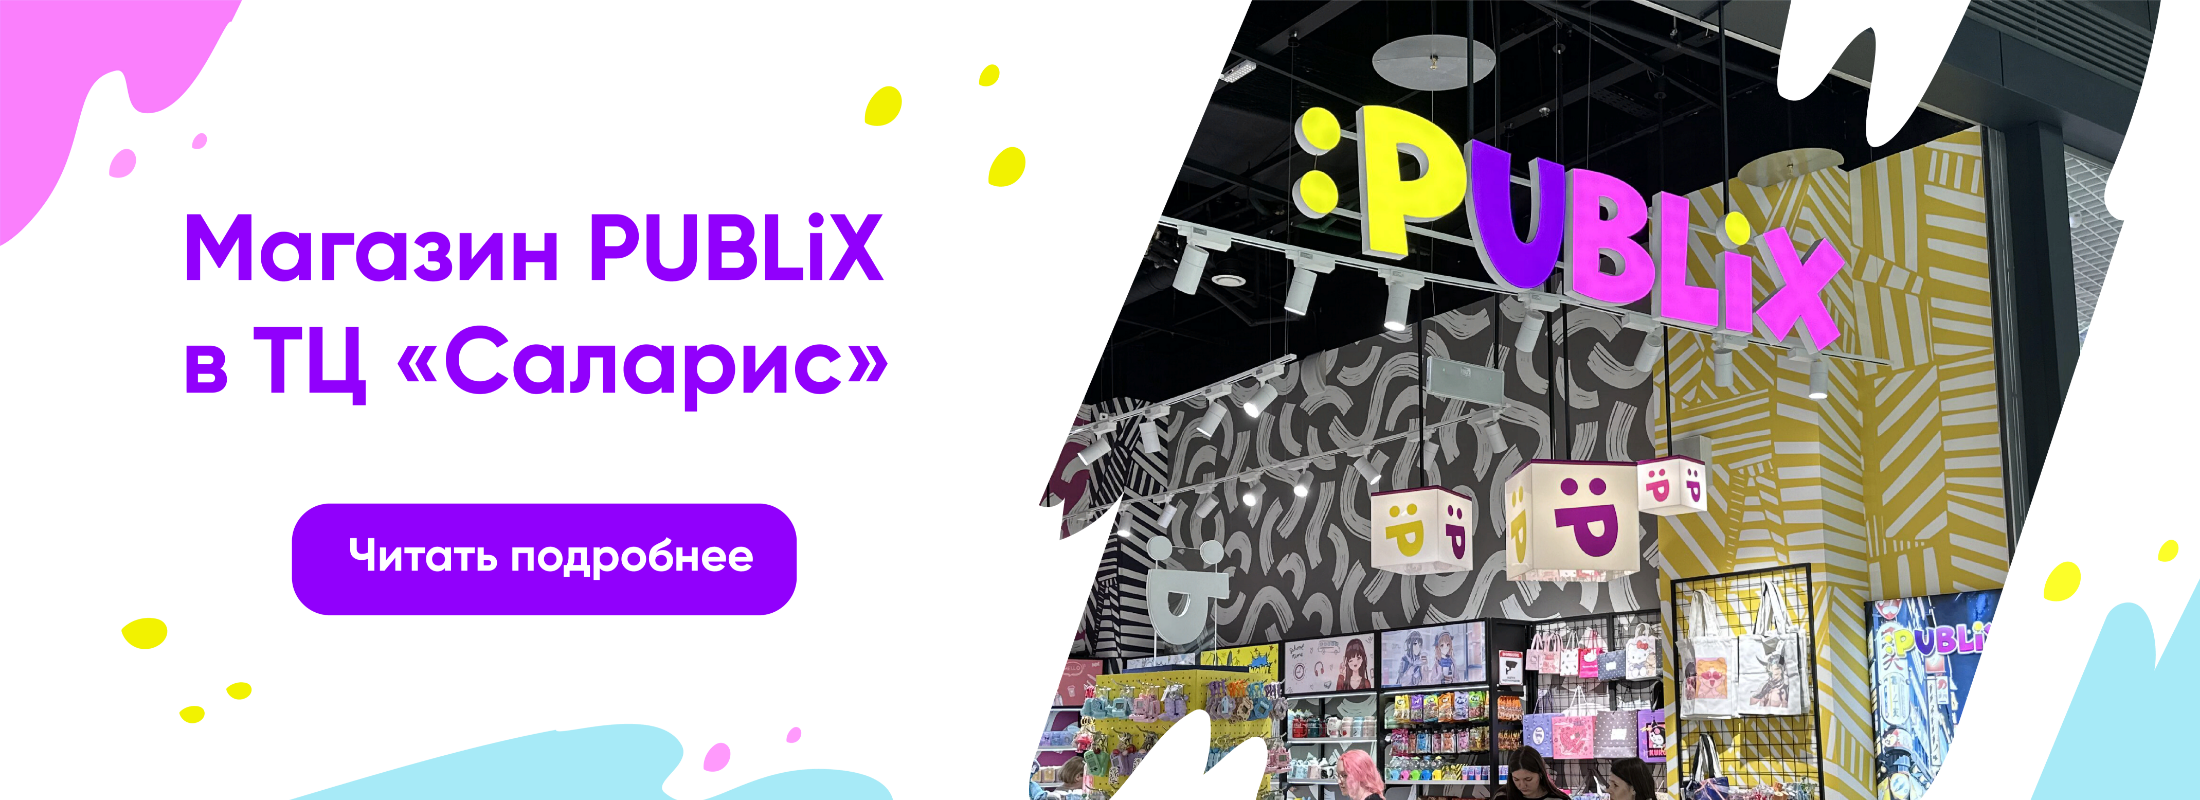 Открытие магазина PUBLiX